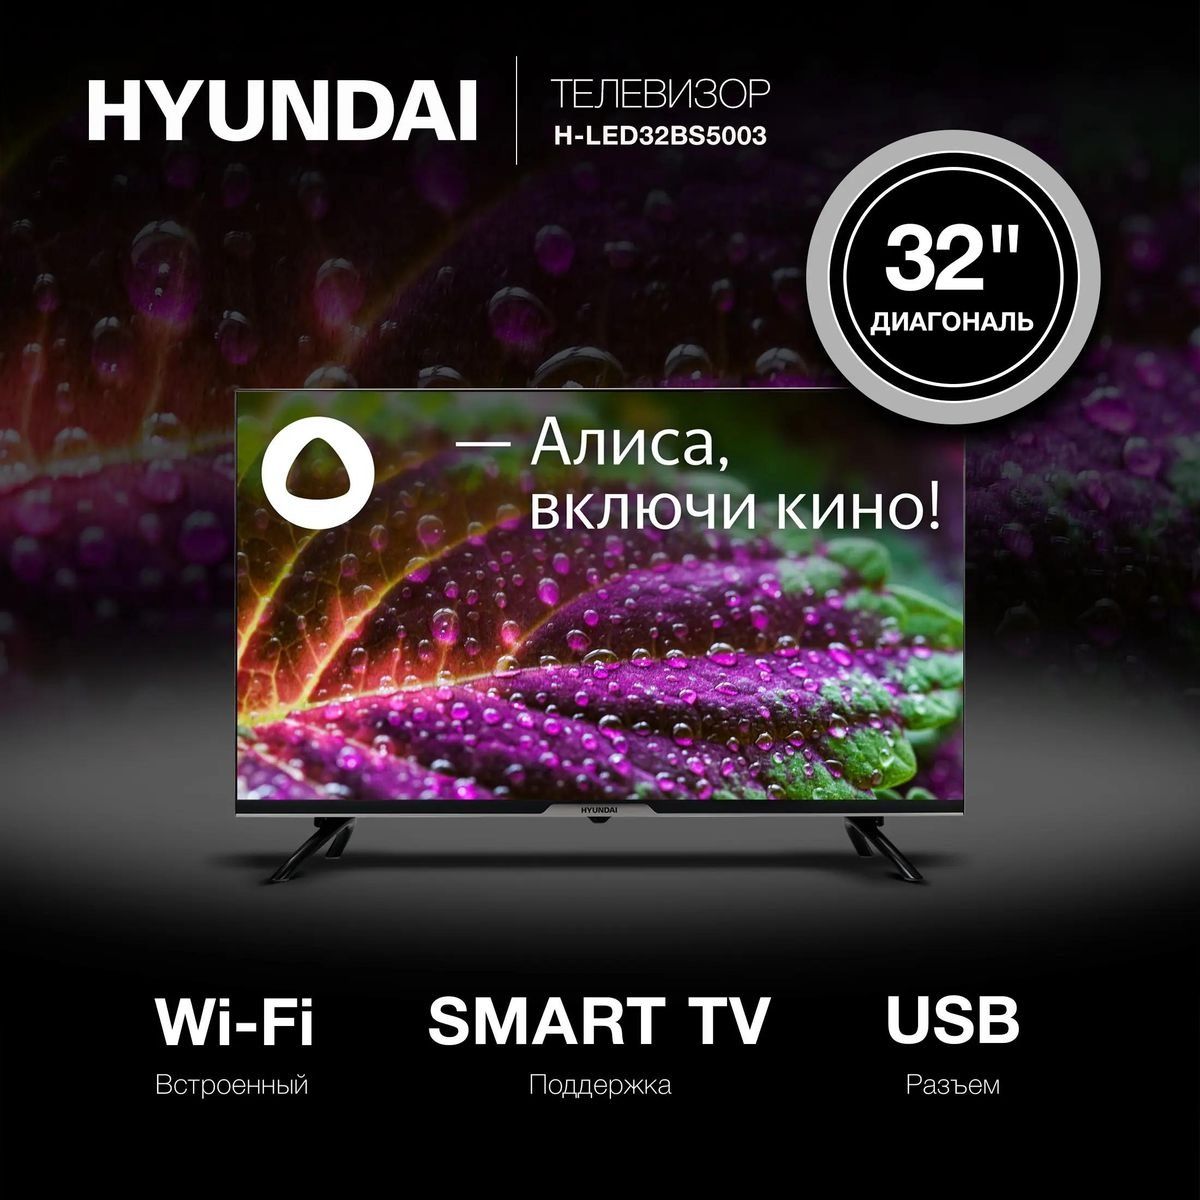 HyundaiТелевизорH-LED32BS500332"HD,черный